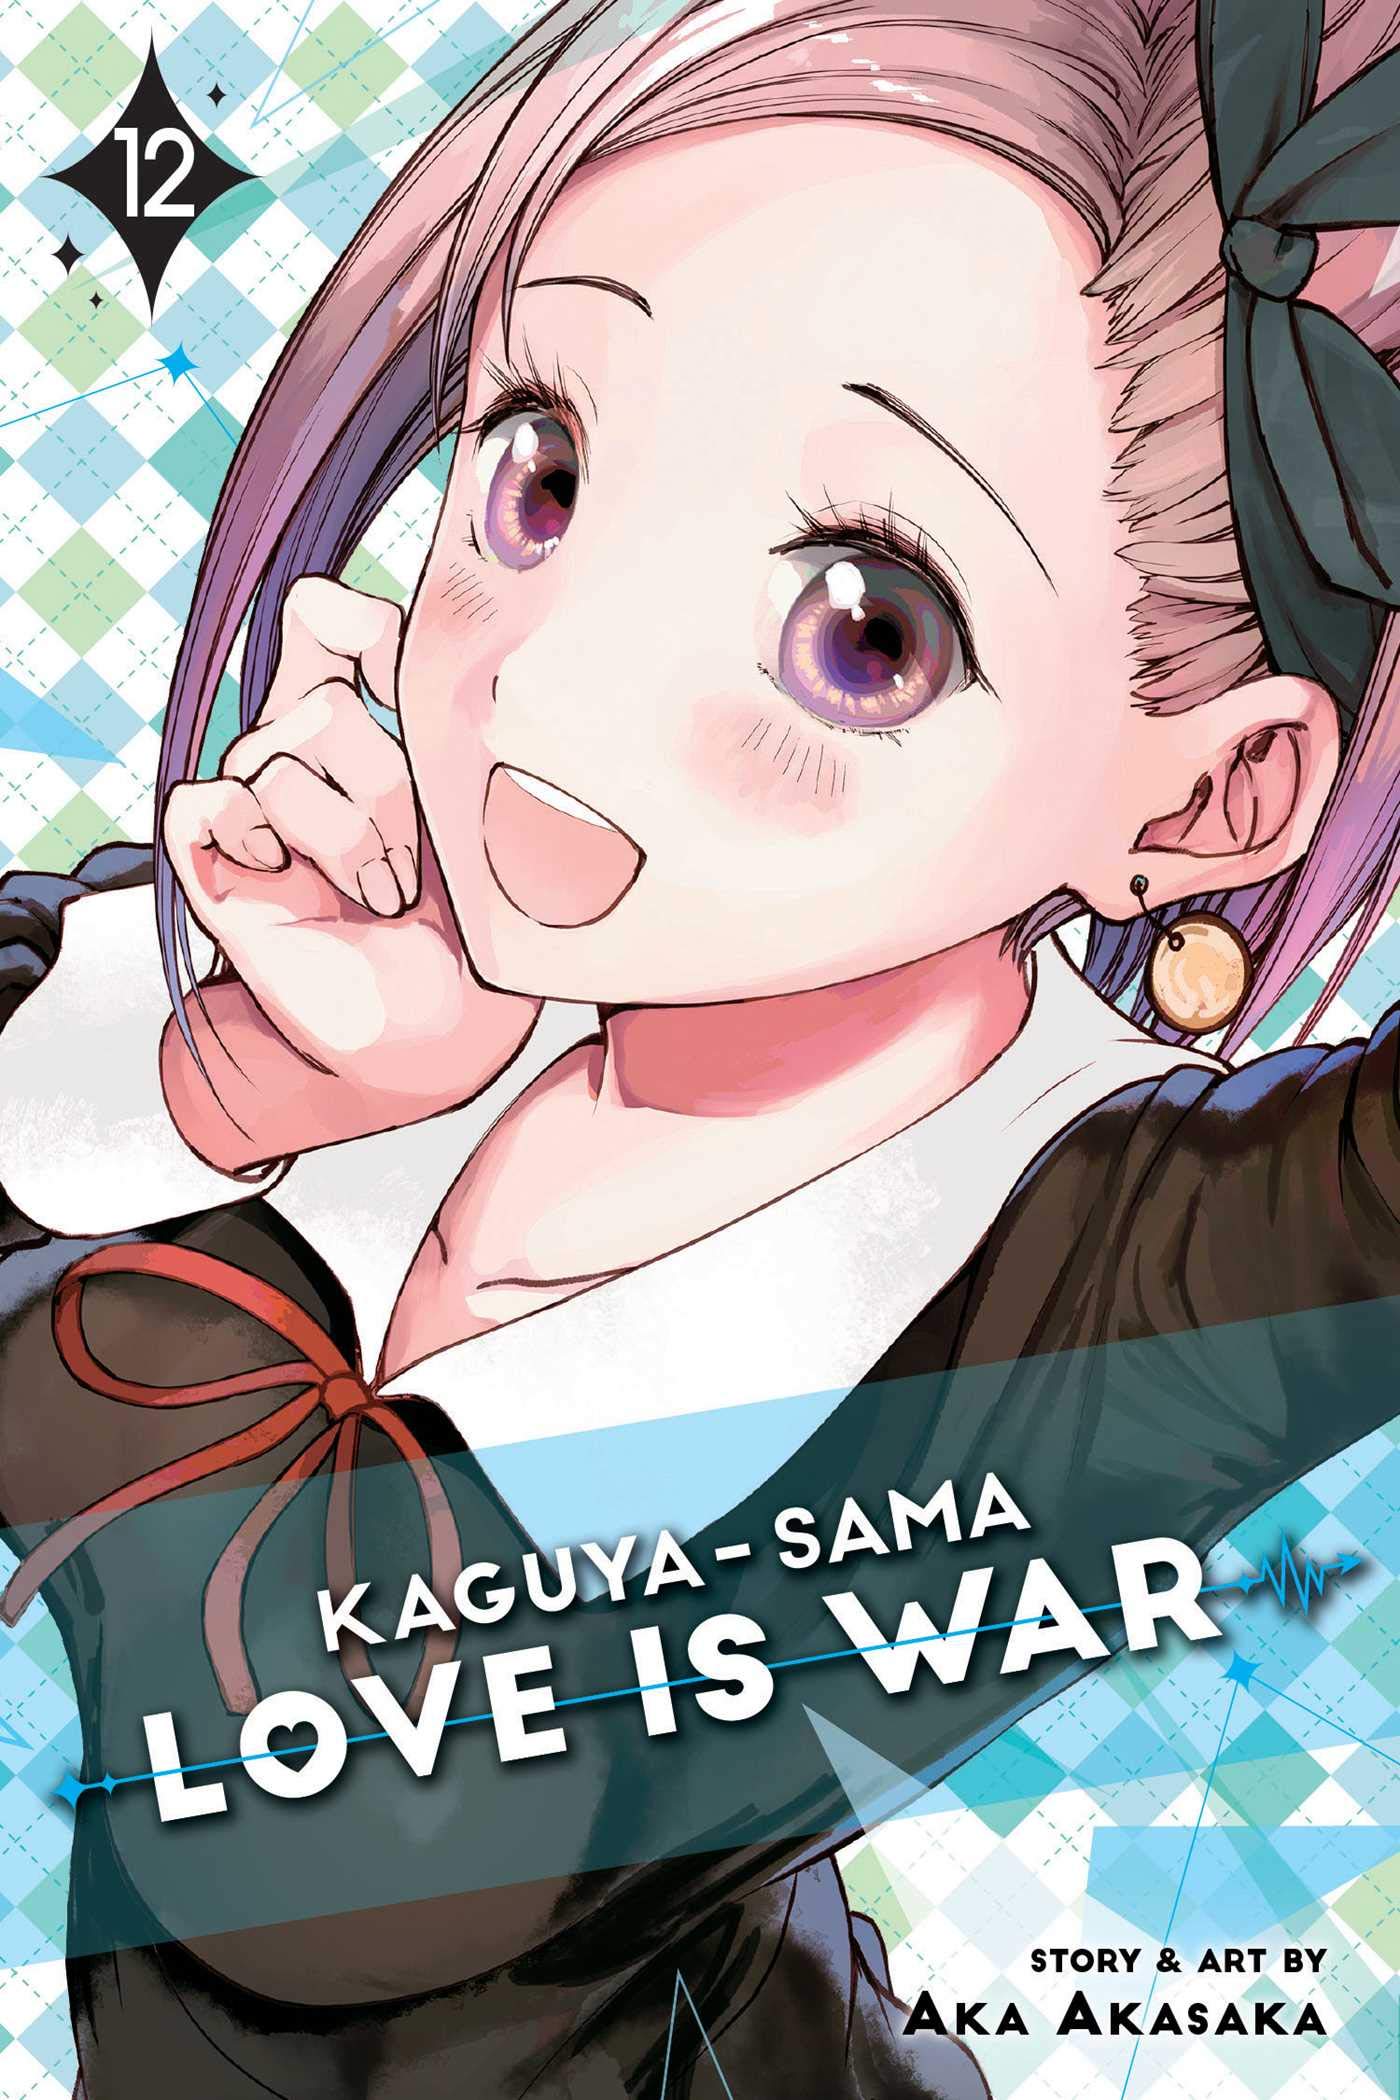 Vezi detalii pentru Kaguya-sama: Love Is War - Volume 12 | Aka Akasaka